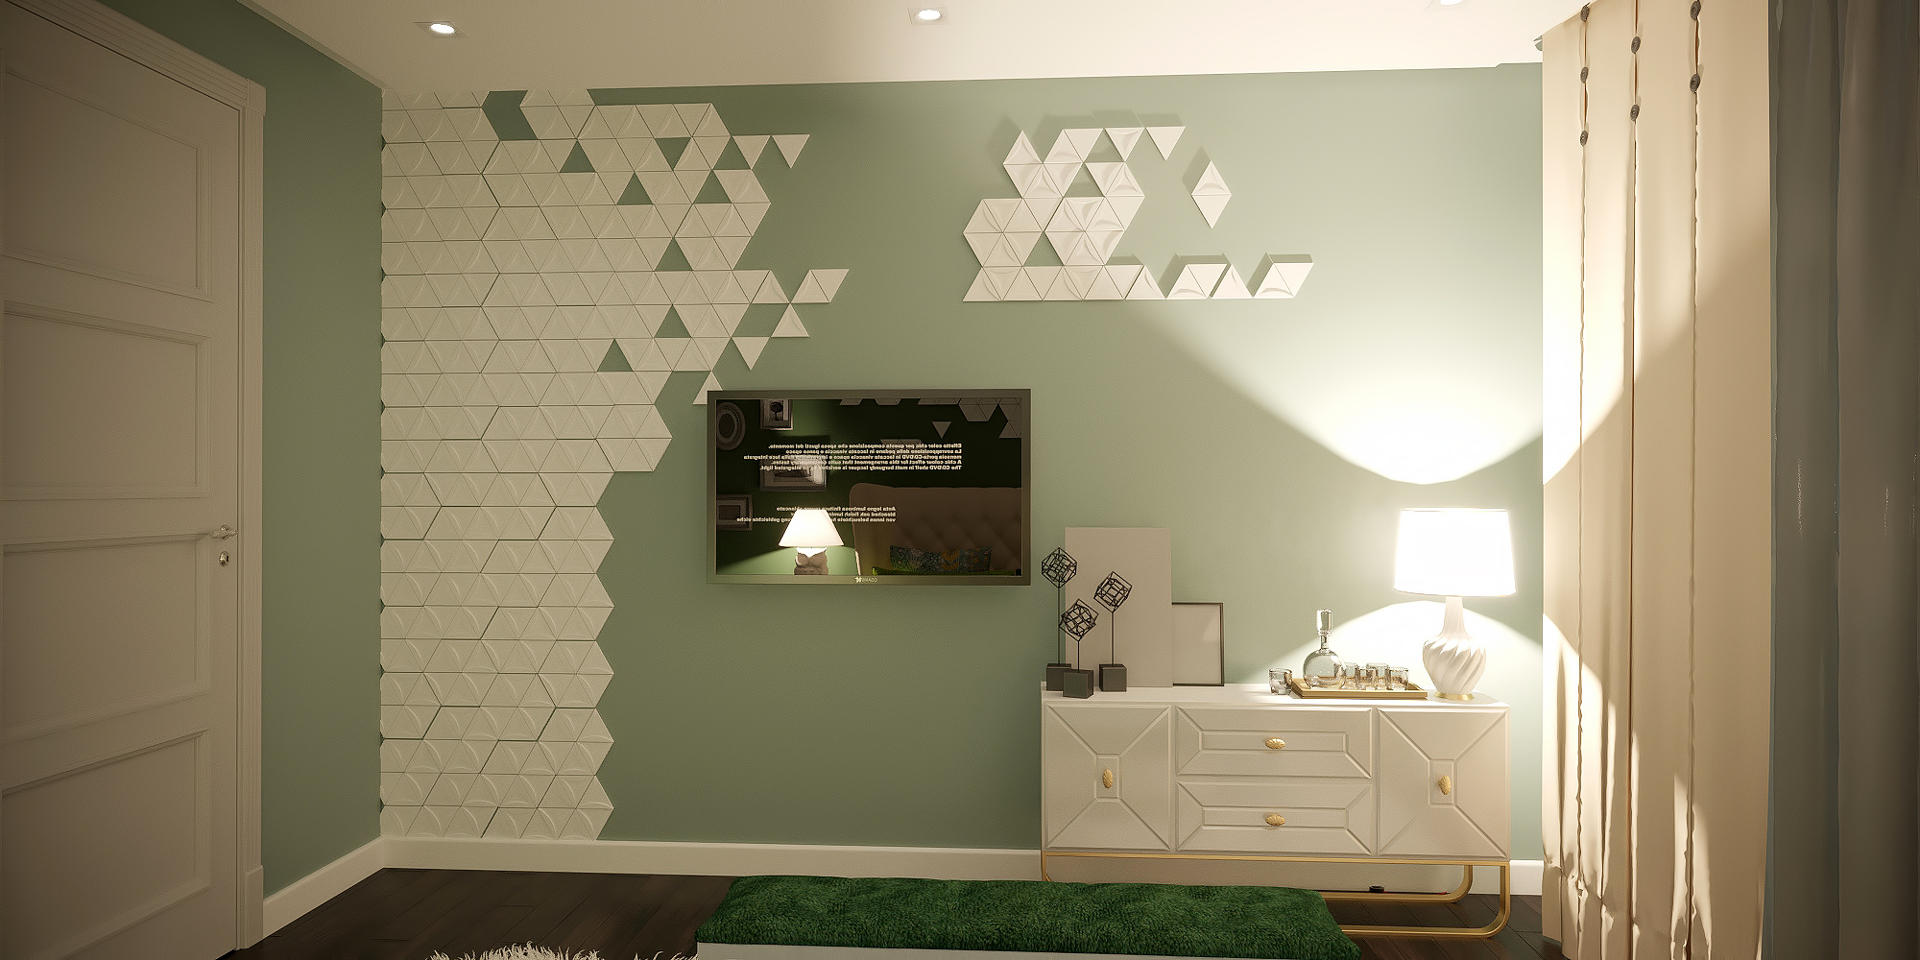 Дизайн спальной комнаты идеи фото Киев. панели на стенах из гибса, салатовый цвет